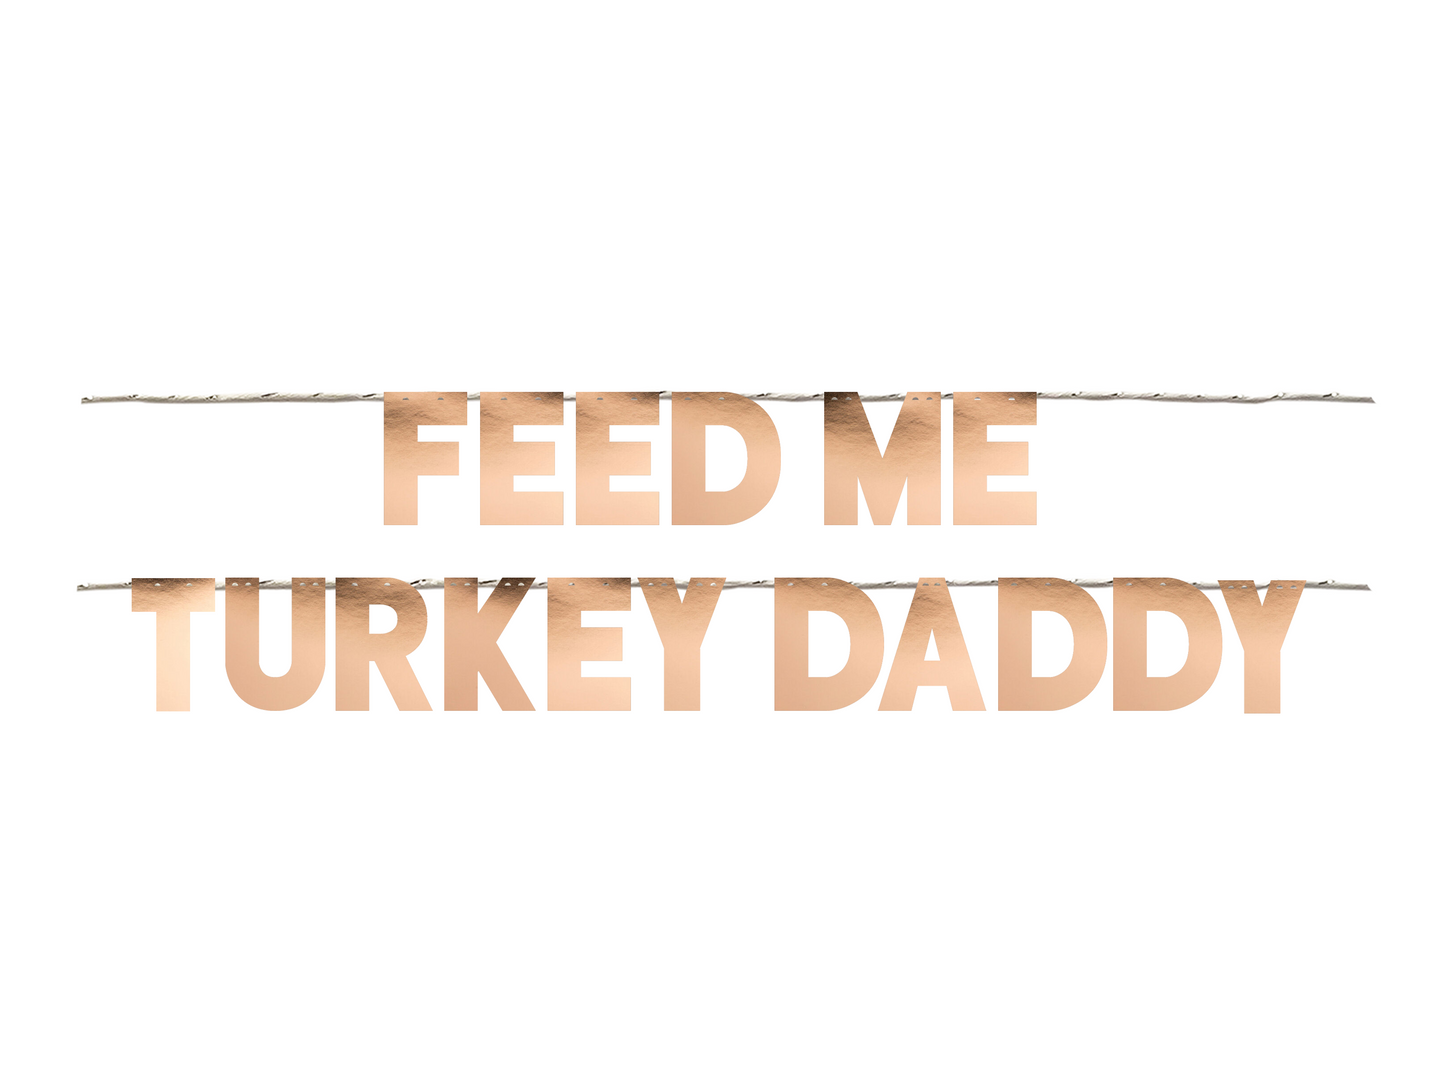 FEED ME TURKEY DADDY